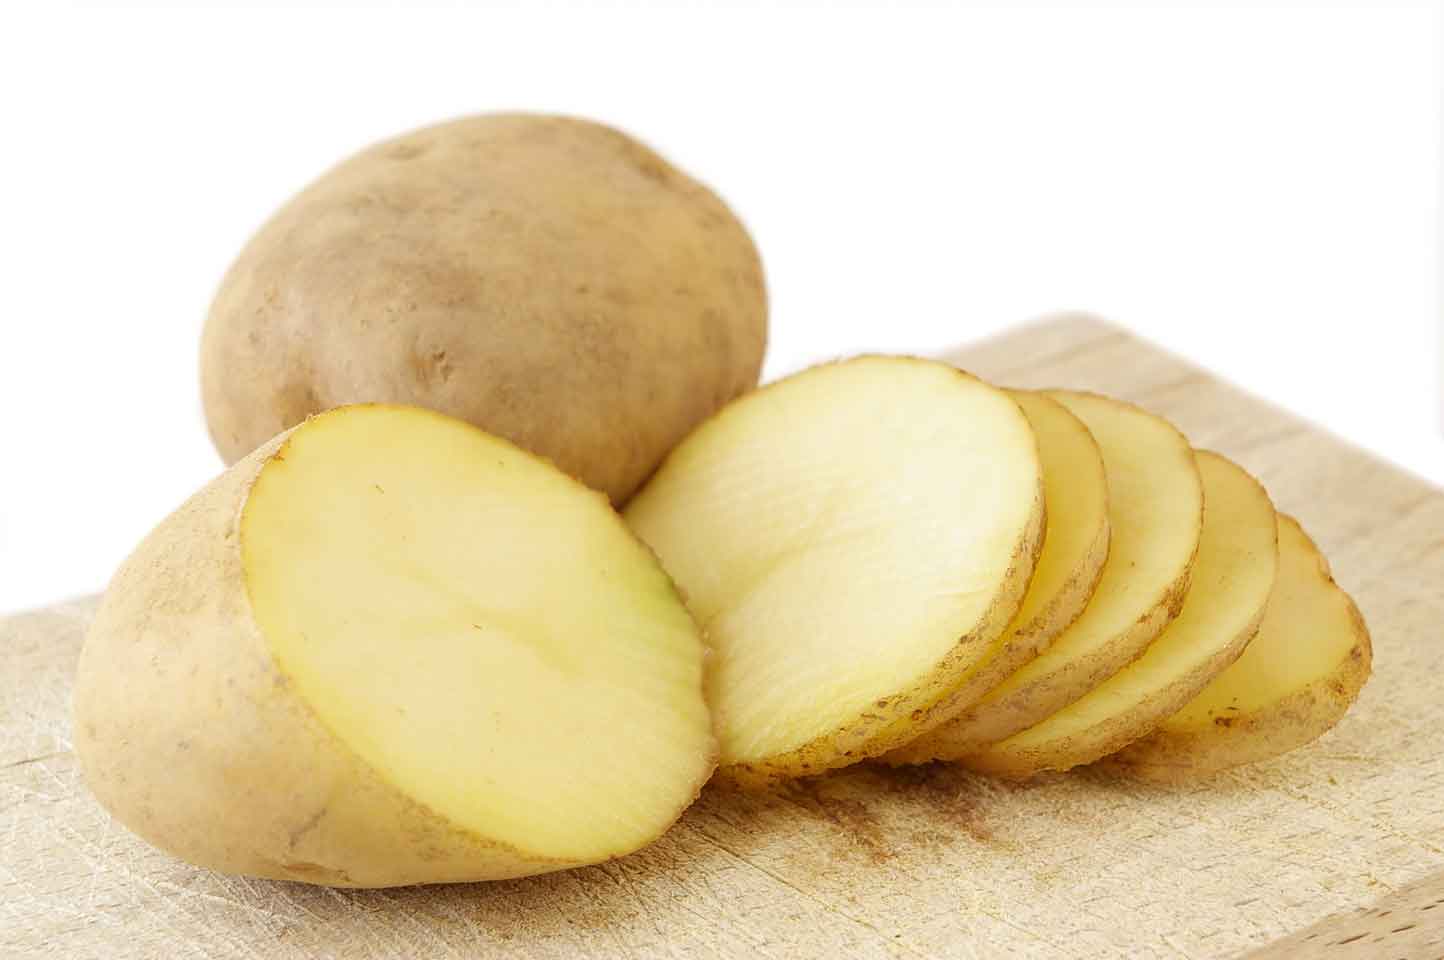 Cách chữa mụn cơm trên mặt hiệu quả cùng mầm khoai tây để tiêu diệt vi khuẩn hình thành mụn